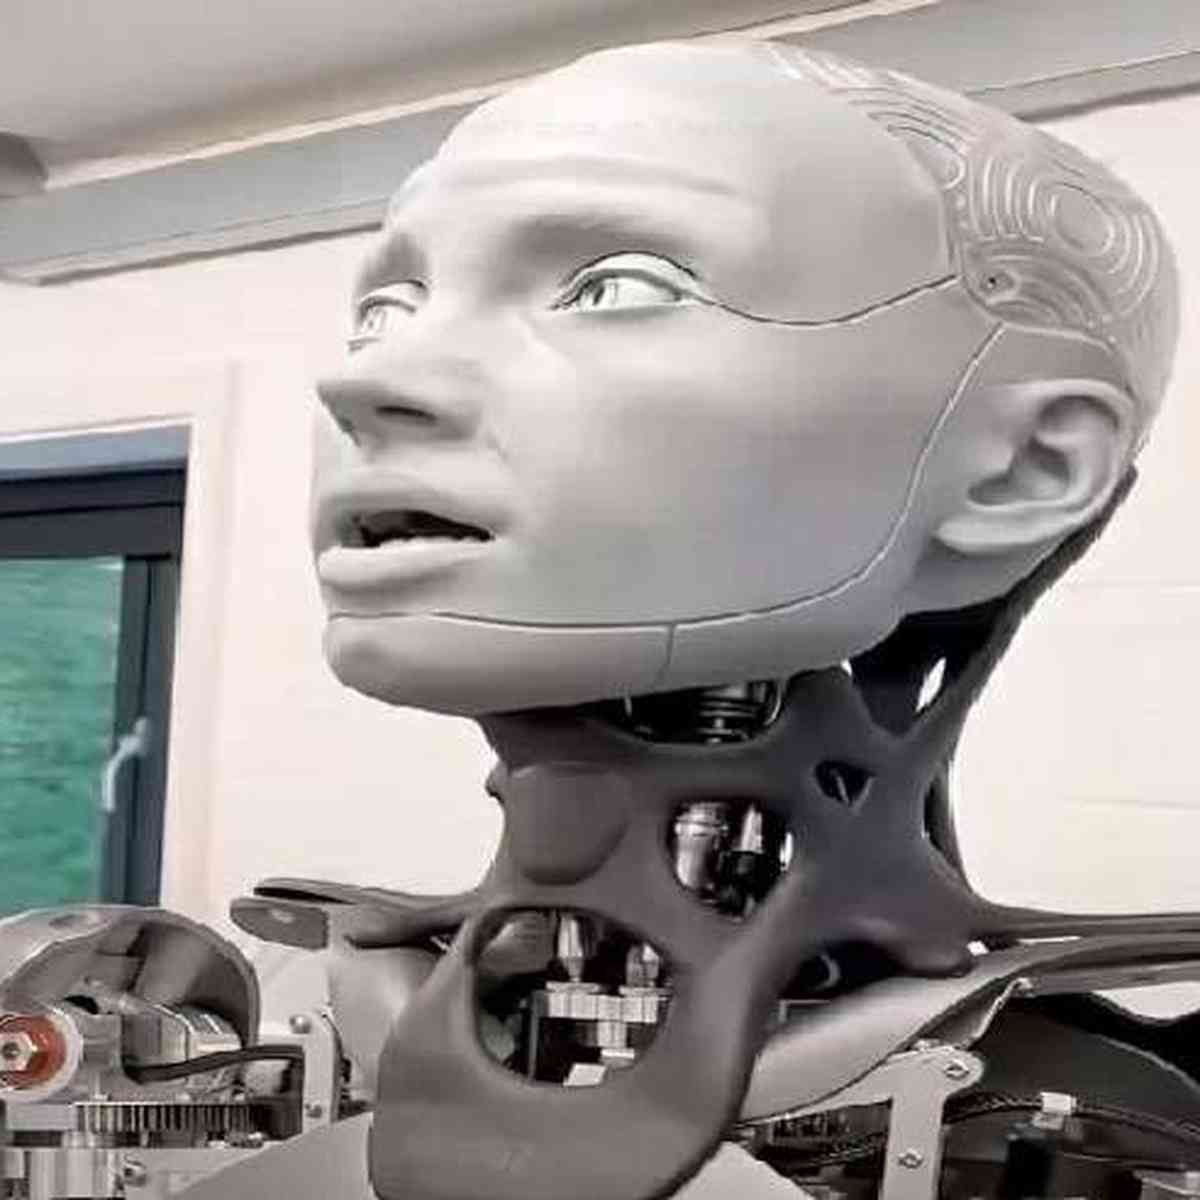 Vídeo: Robô Ameca chama atenção e 'assusta' por semelhança com humanos